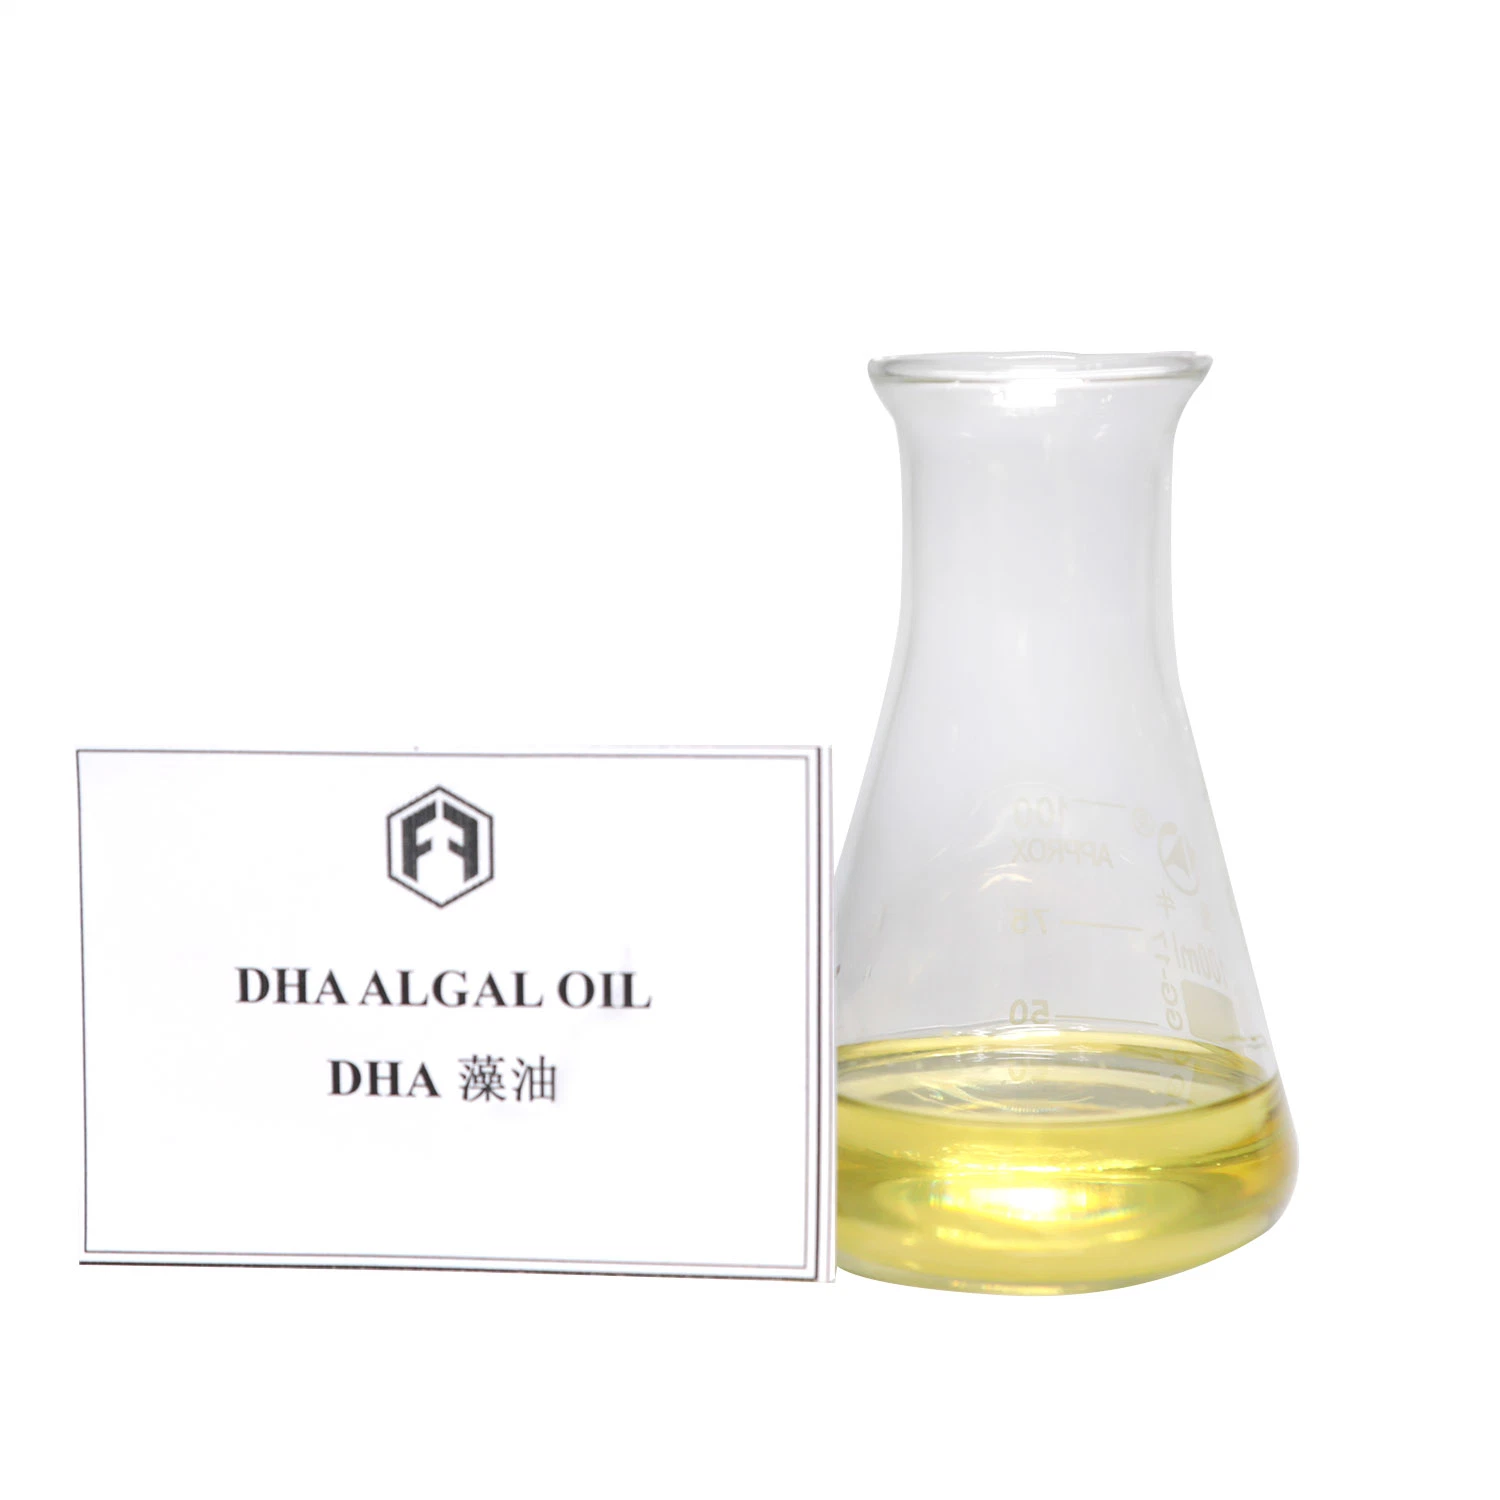 Alta qualidade Material bruto ômega 3 Óleo de peixe DHA/DHA Algas óleo para os cuidados de saúde